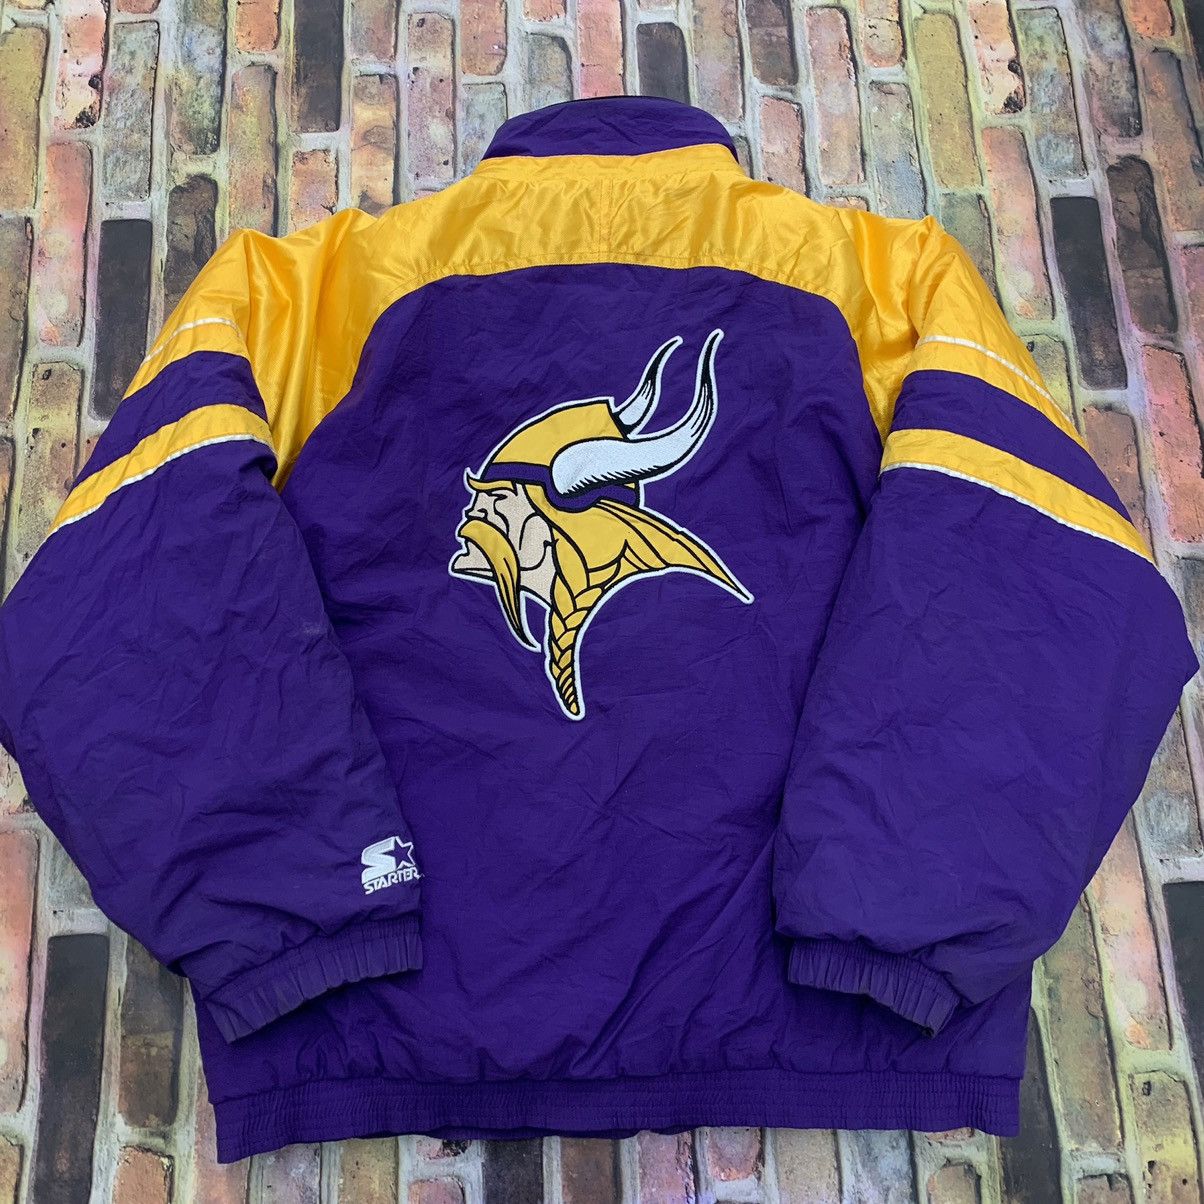 Vintage Vintage Minnesota Vikings jacket | Grailed